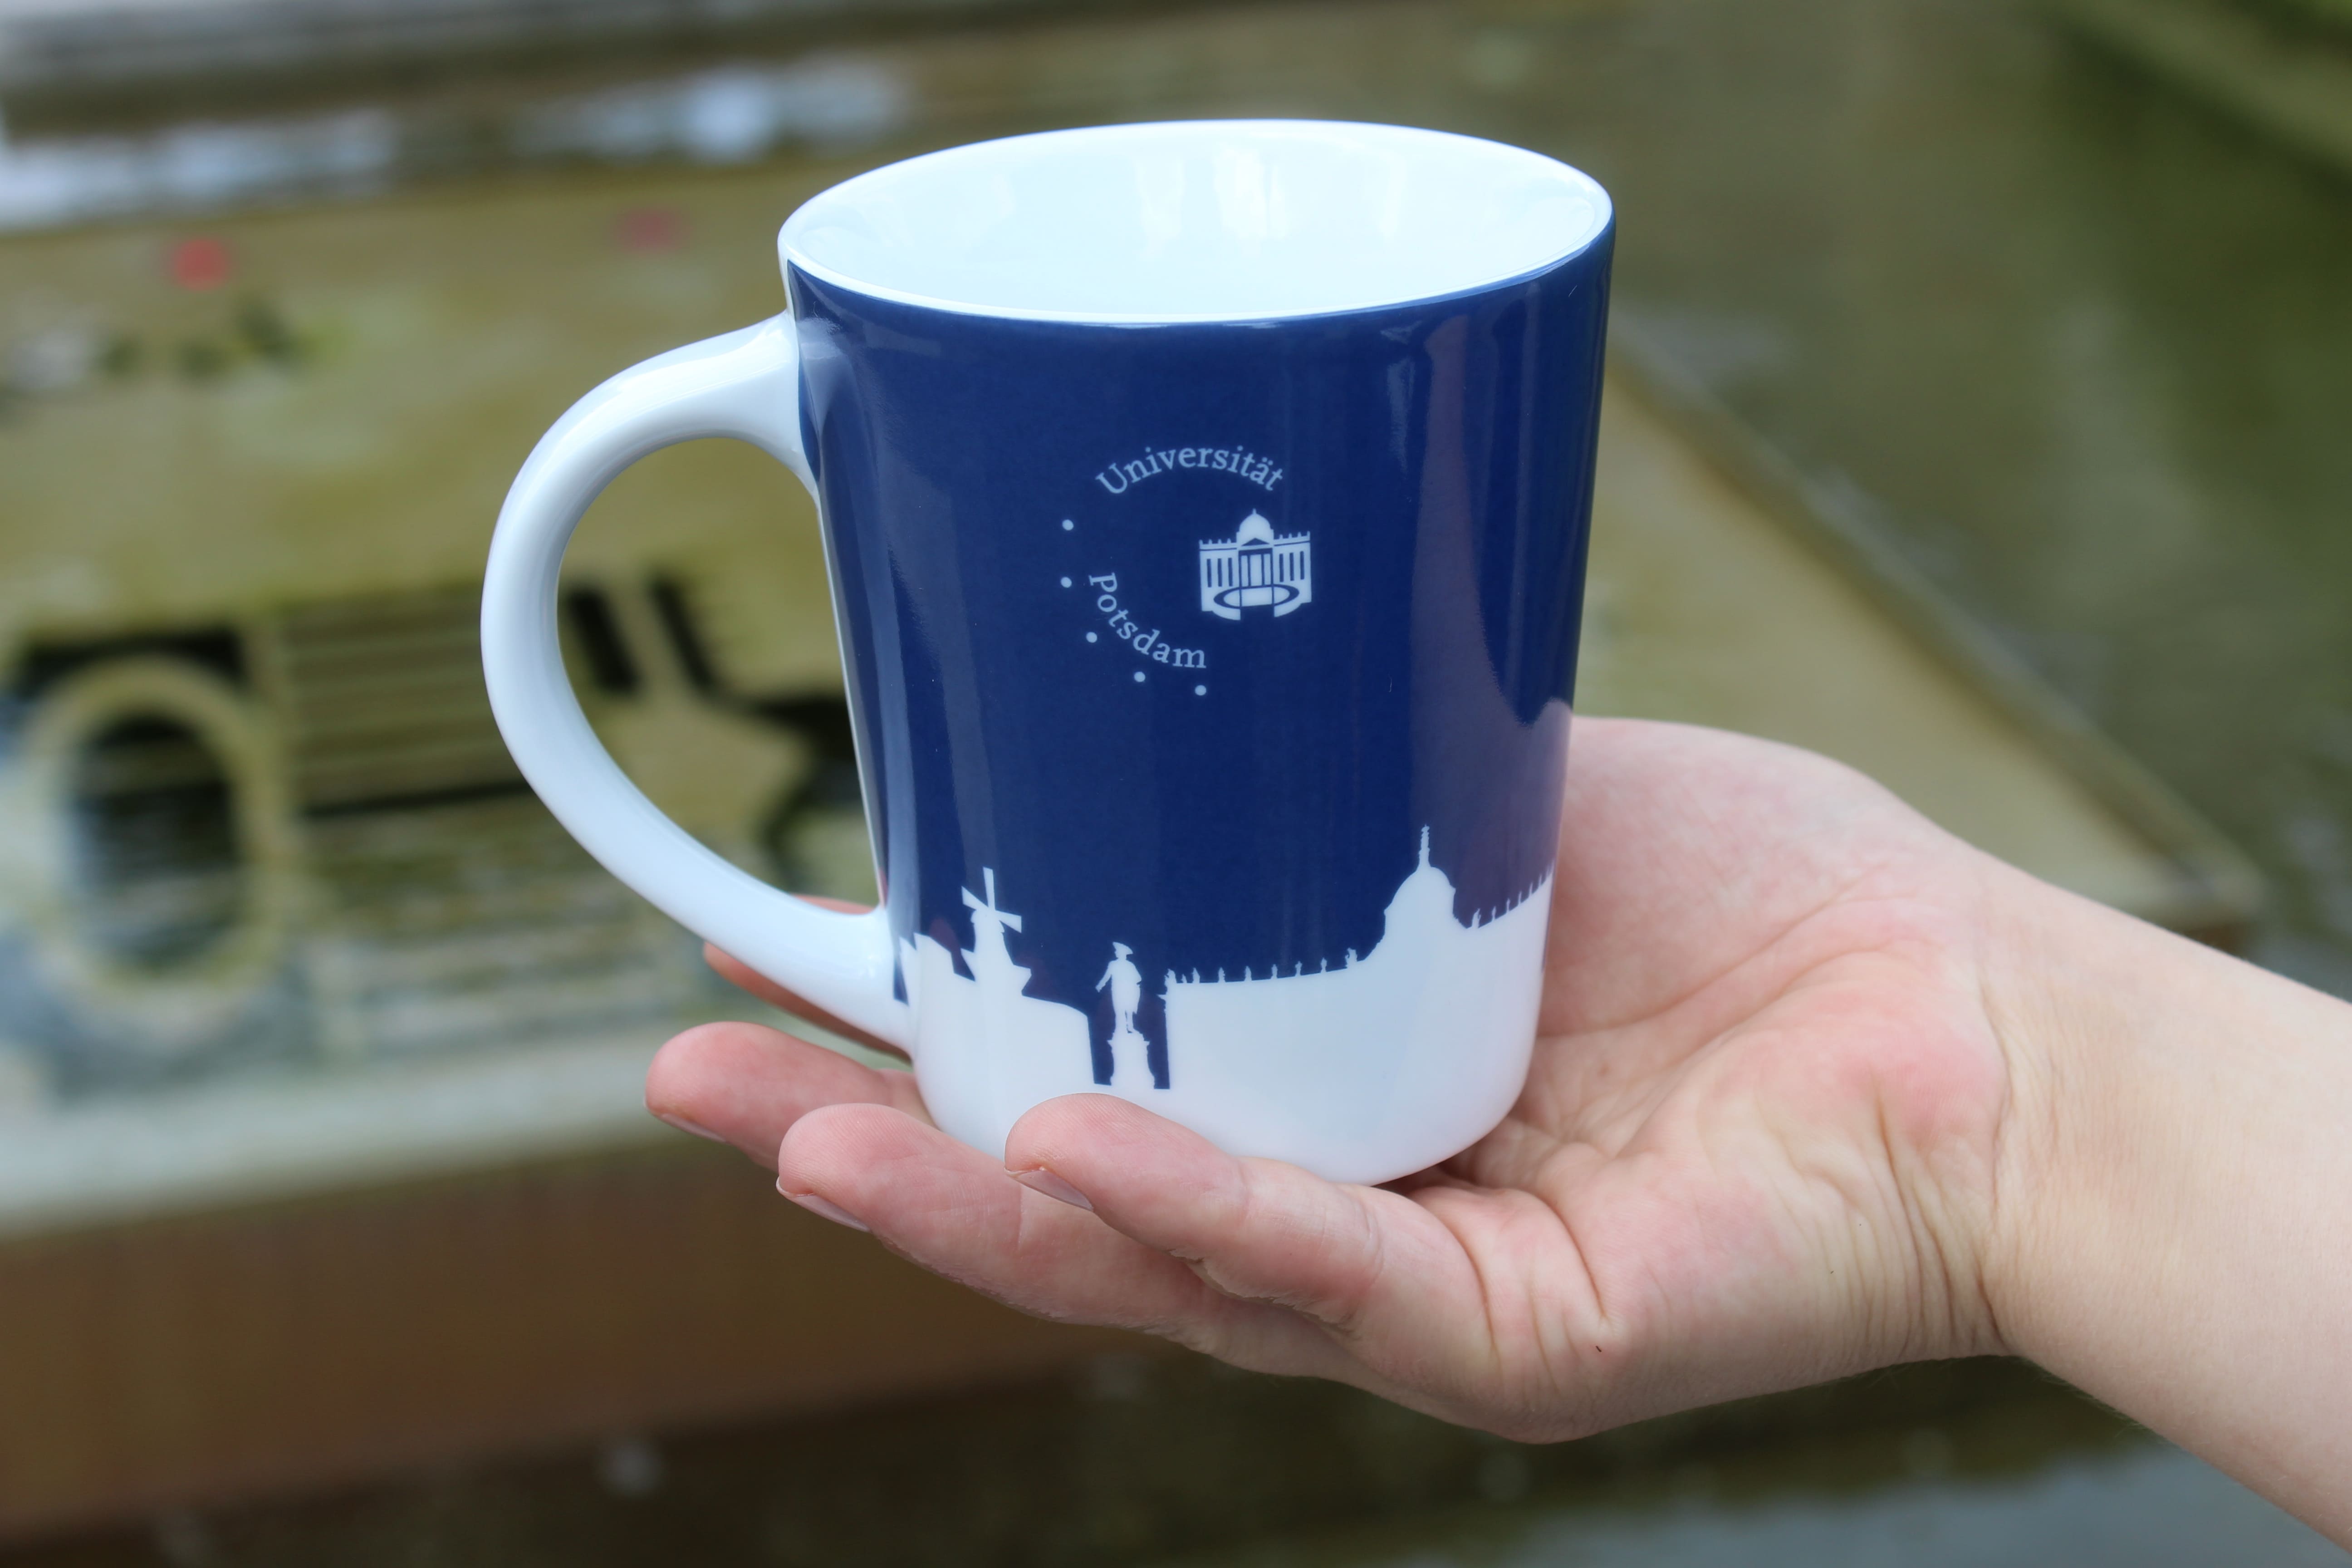 Porzellan-pot. Abgebildet ist eine blaue Tasse mit einer weißen Silhouette der Stadt Potsdam und zusätzlich dem Universitätslogo. Im Hintergrund erkennt man verschwommen ein Gebäude.